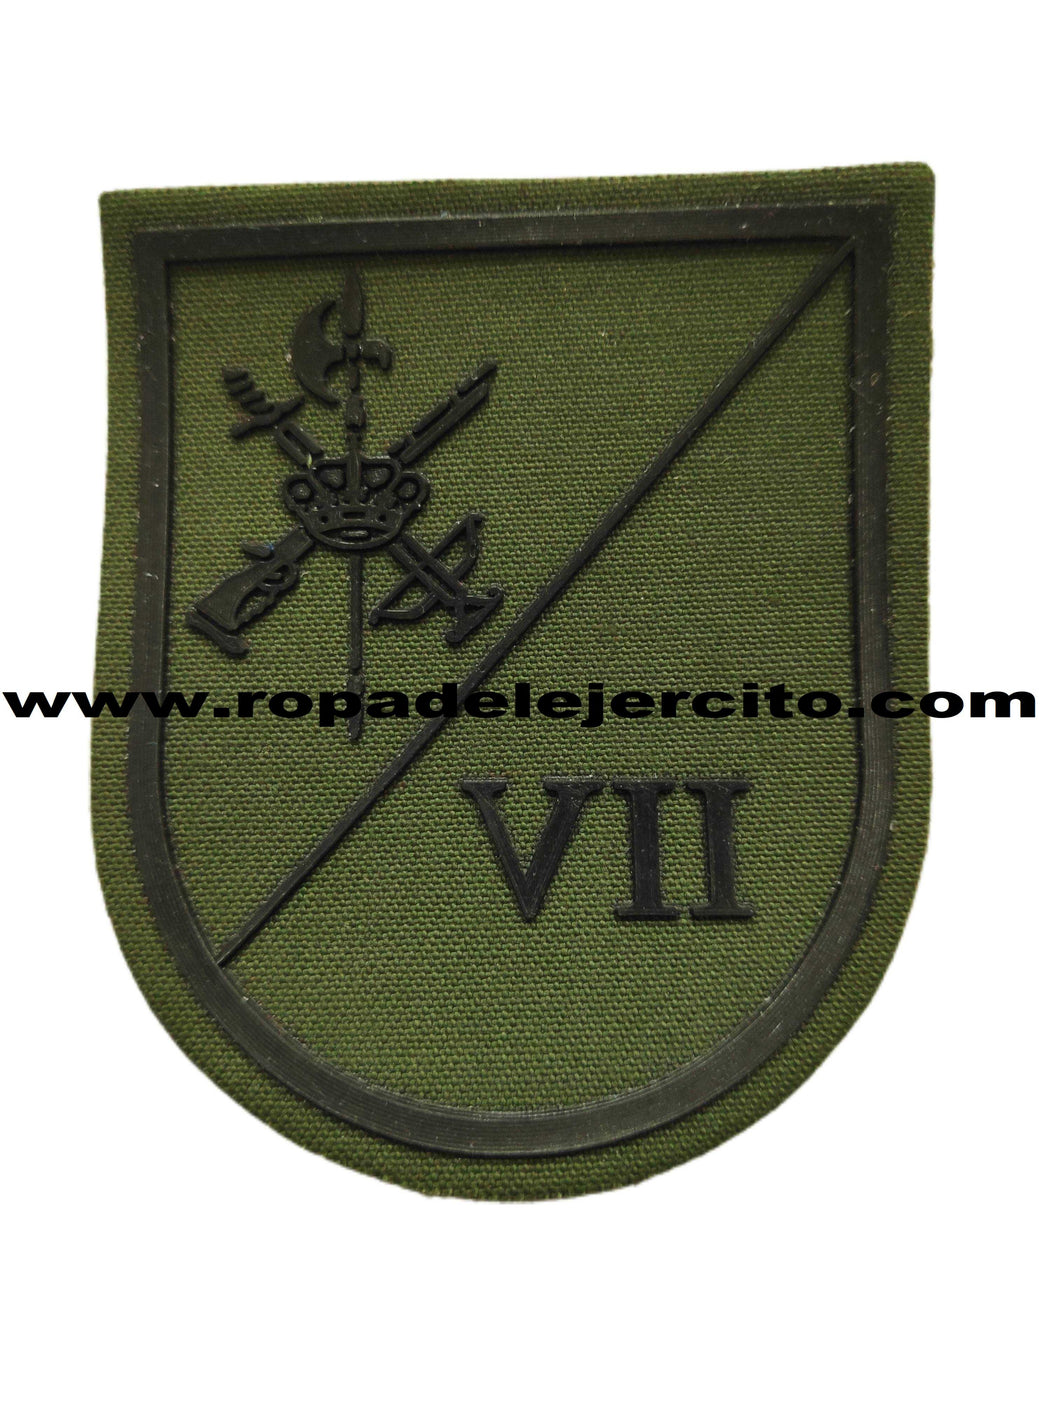 Parche legion VII bandera Valenzuela verde c/velcro